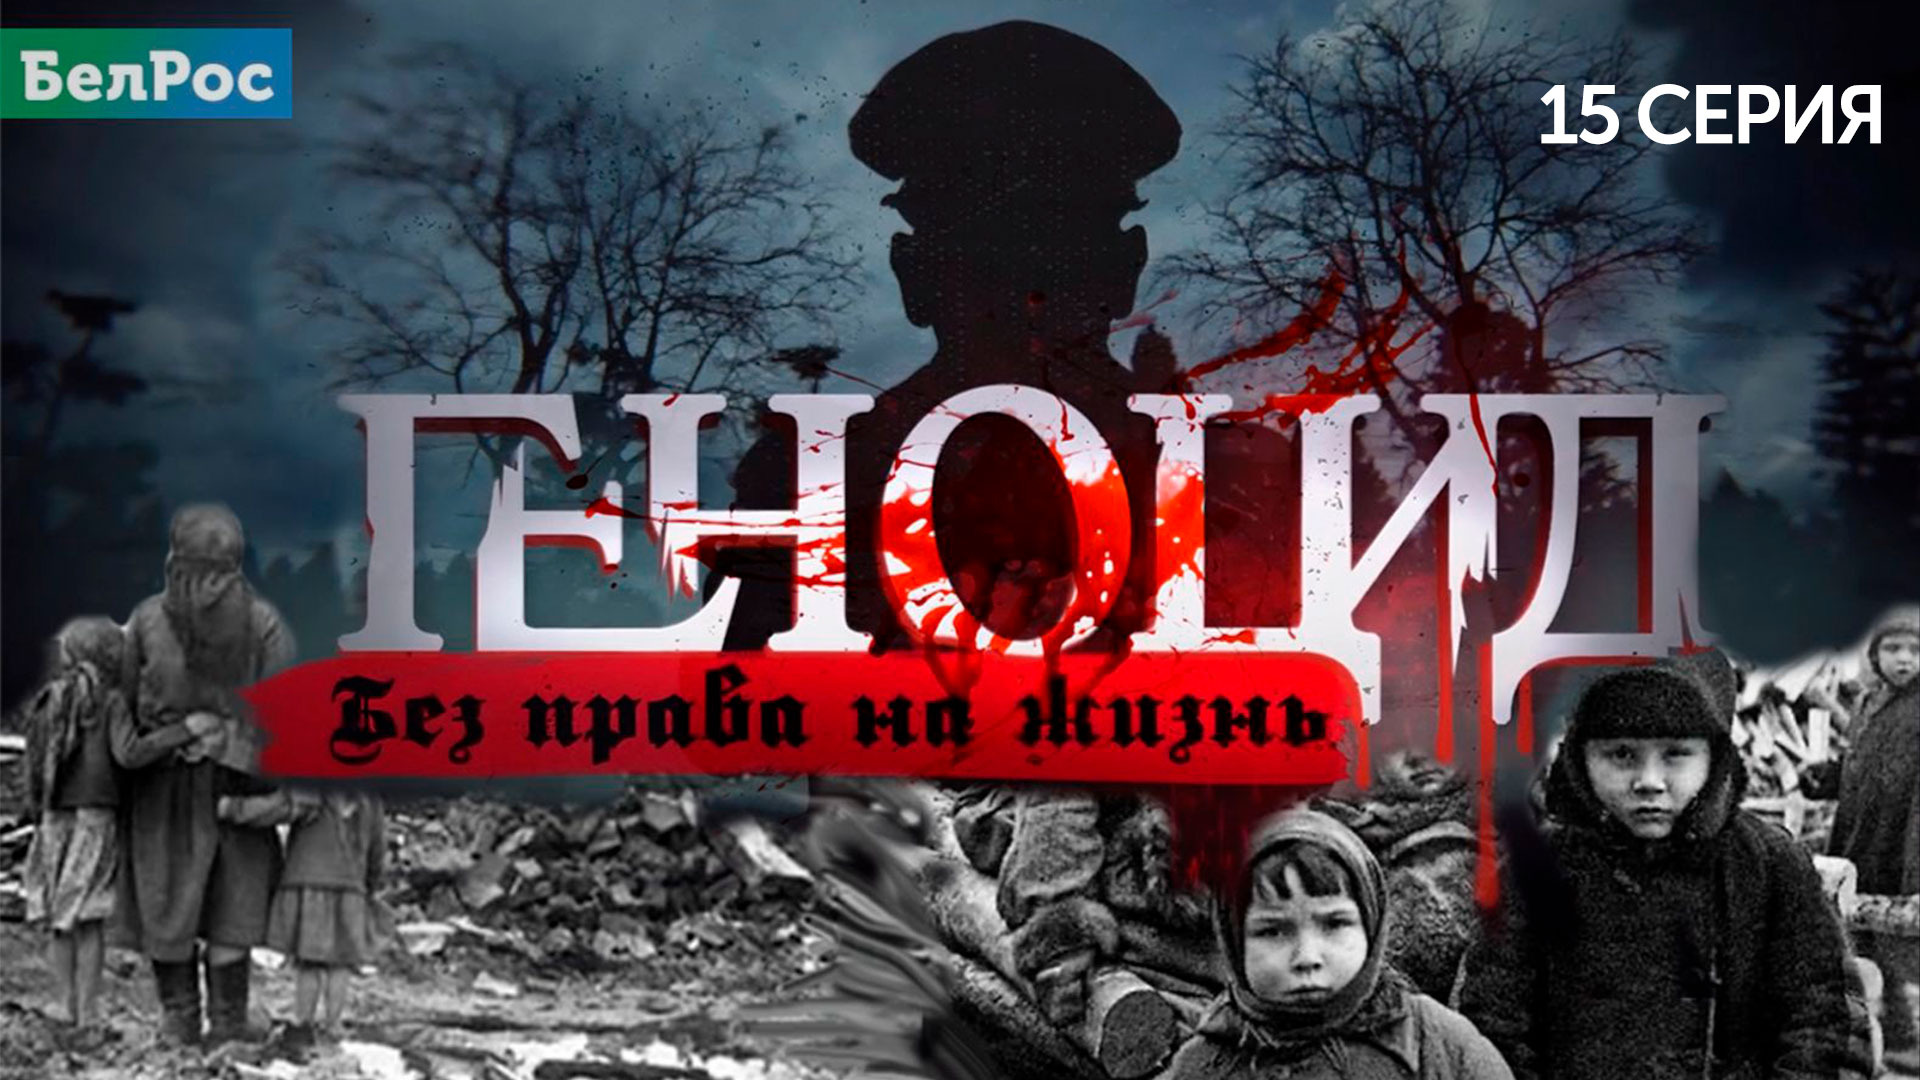 Ужасы немецкого рабства | Истории угнанных белорусов